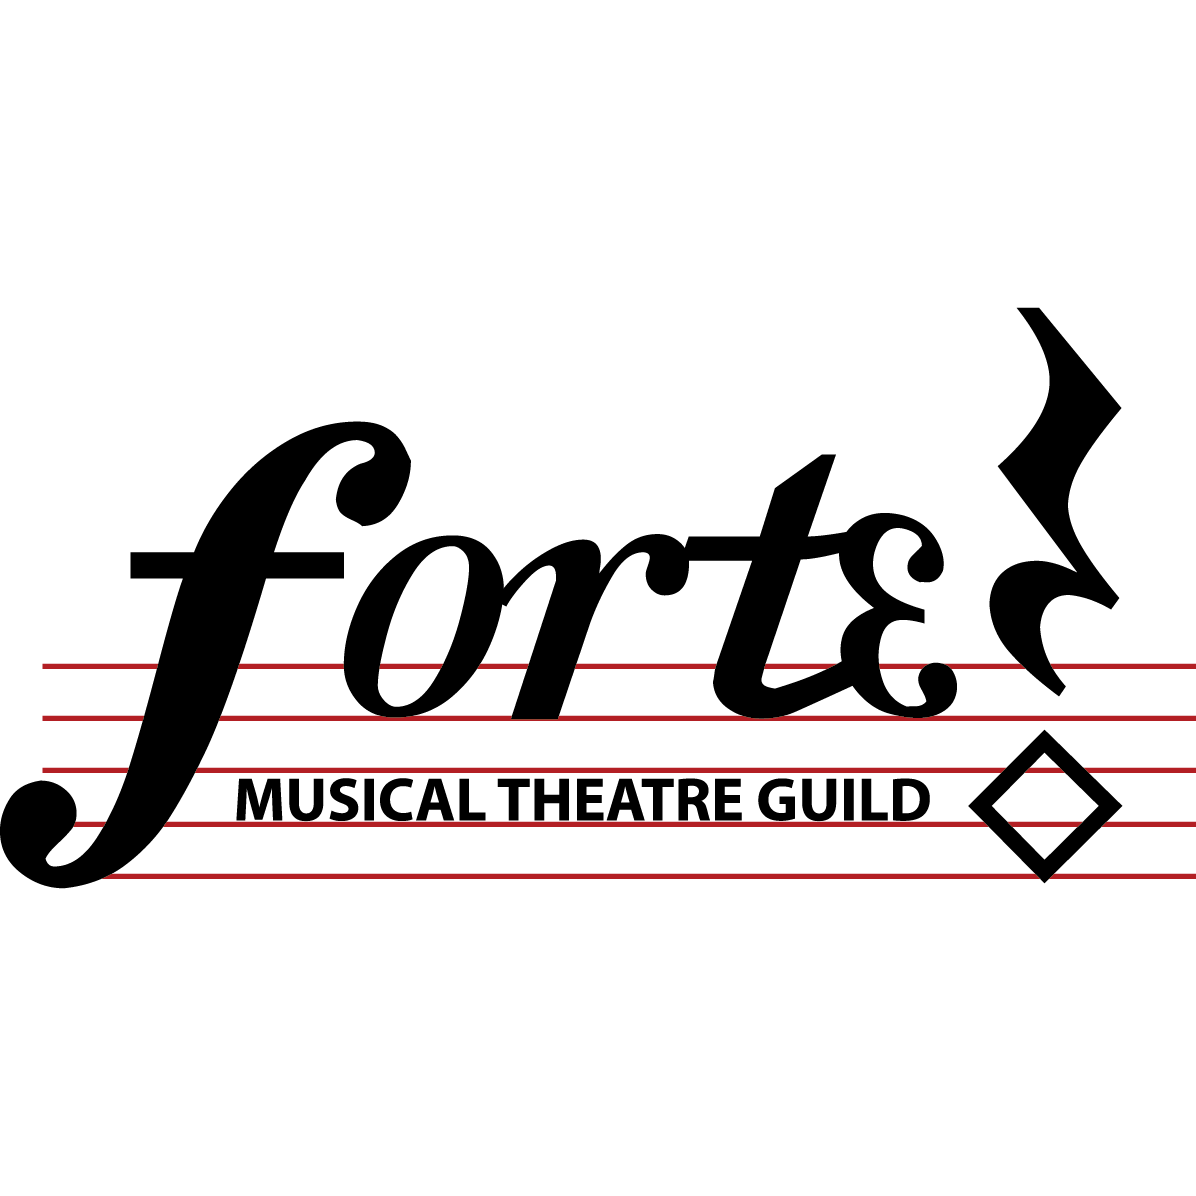 480 – Forte Musical Theatre Guild Logo-01